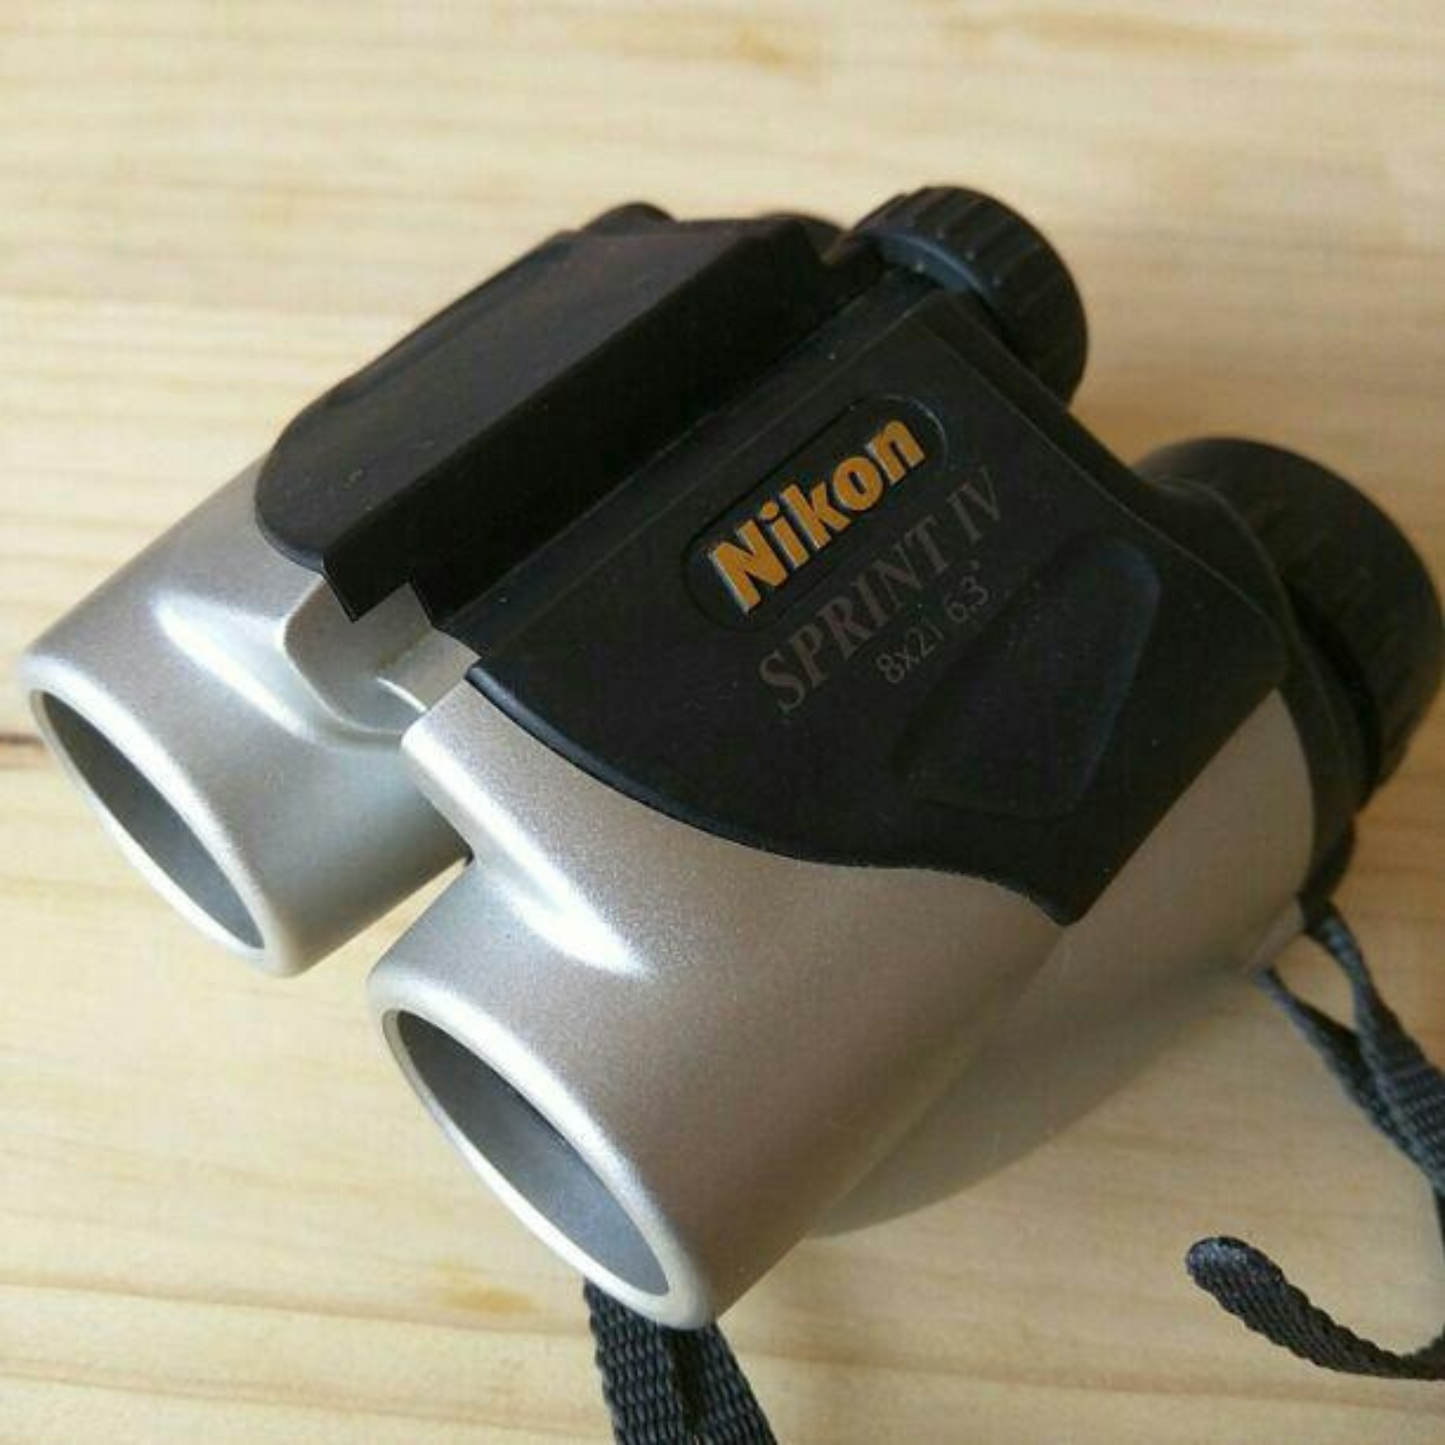 Nikon Sprint IV 10X21 Binocular (Black)